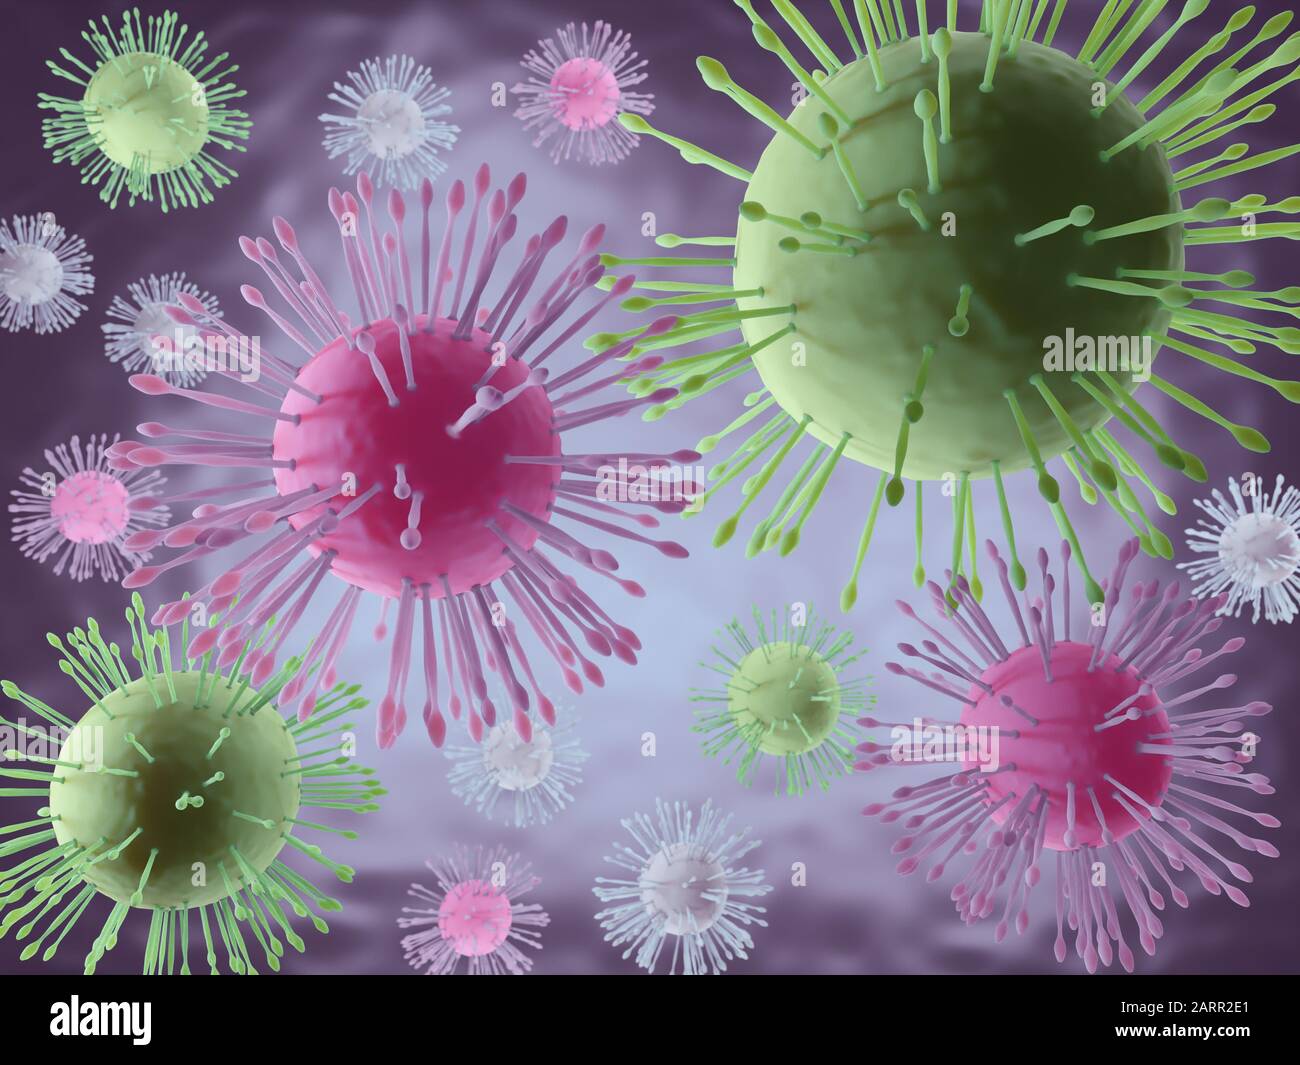 Reproducción 3D de imágenes microscópicas de partículas mortales de coronavirus Foto de stock